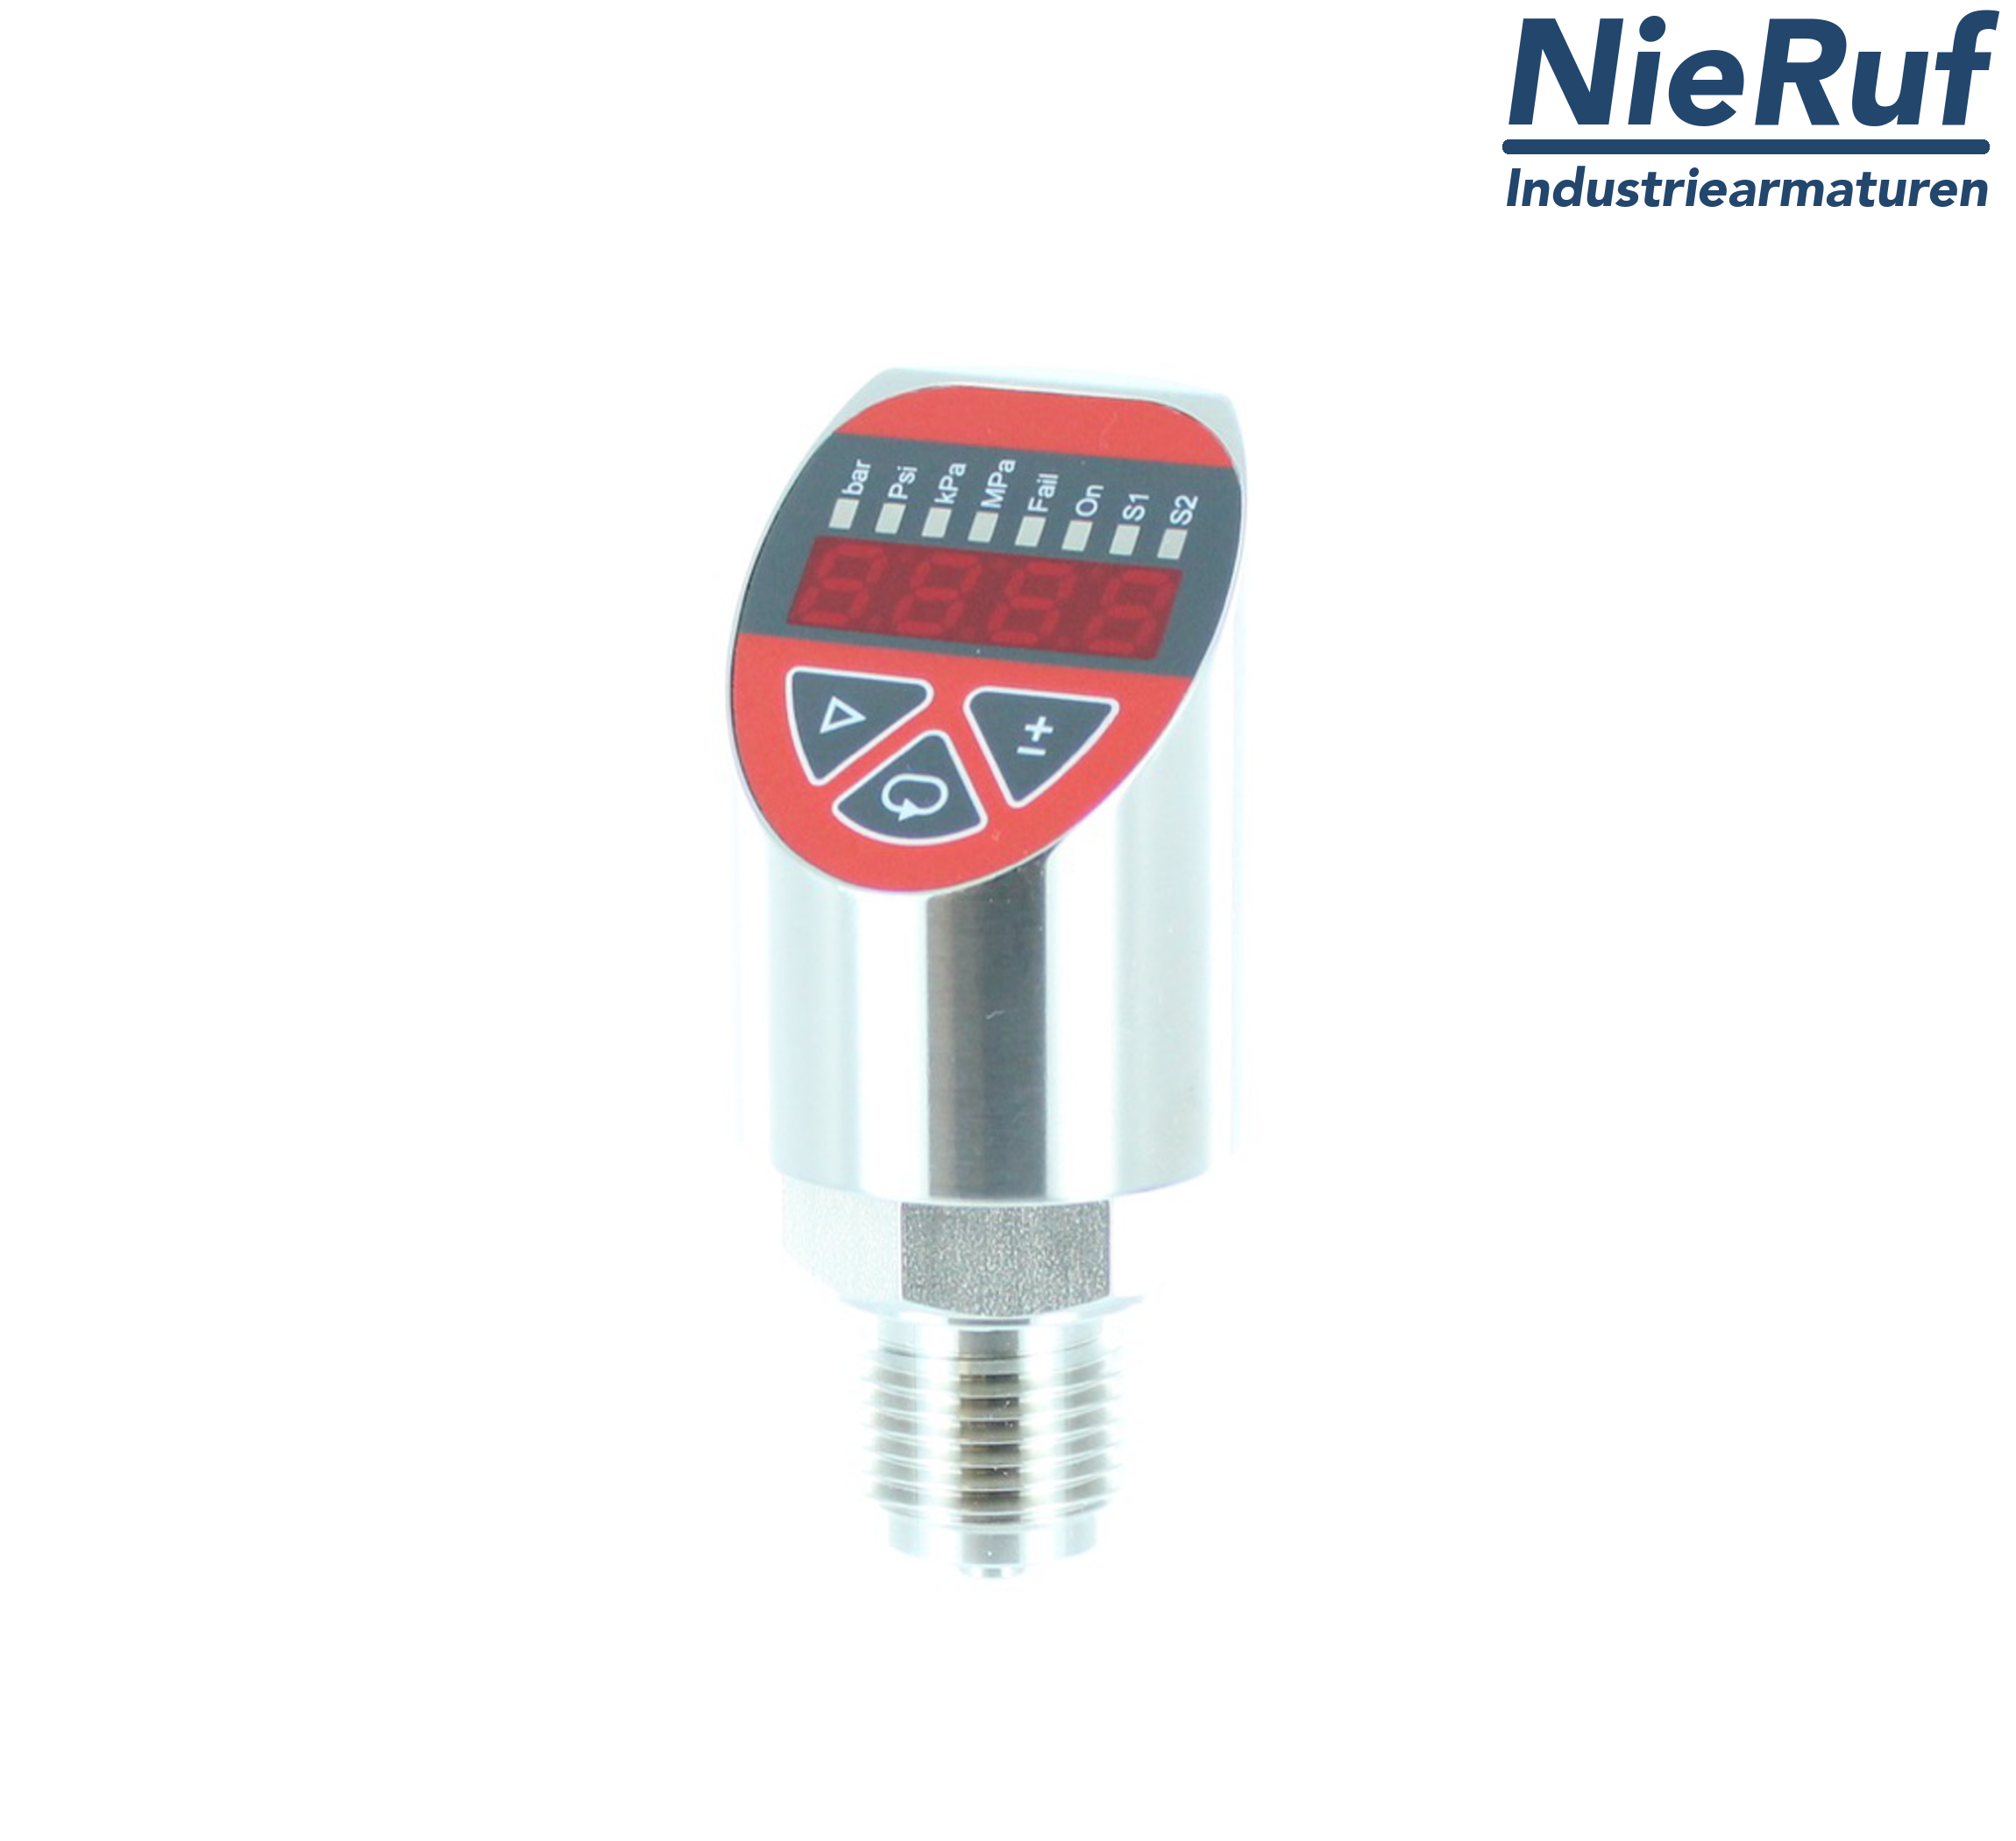 digital pressure sensor G 1/2" B IB 5-wire: 2xPNP, 1x4 - 20mA FPM 0,0 - 400,0 bar